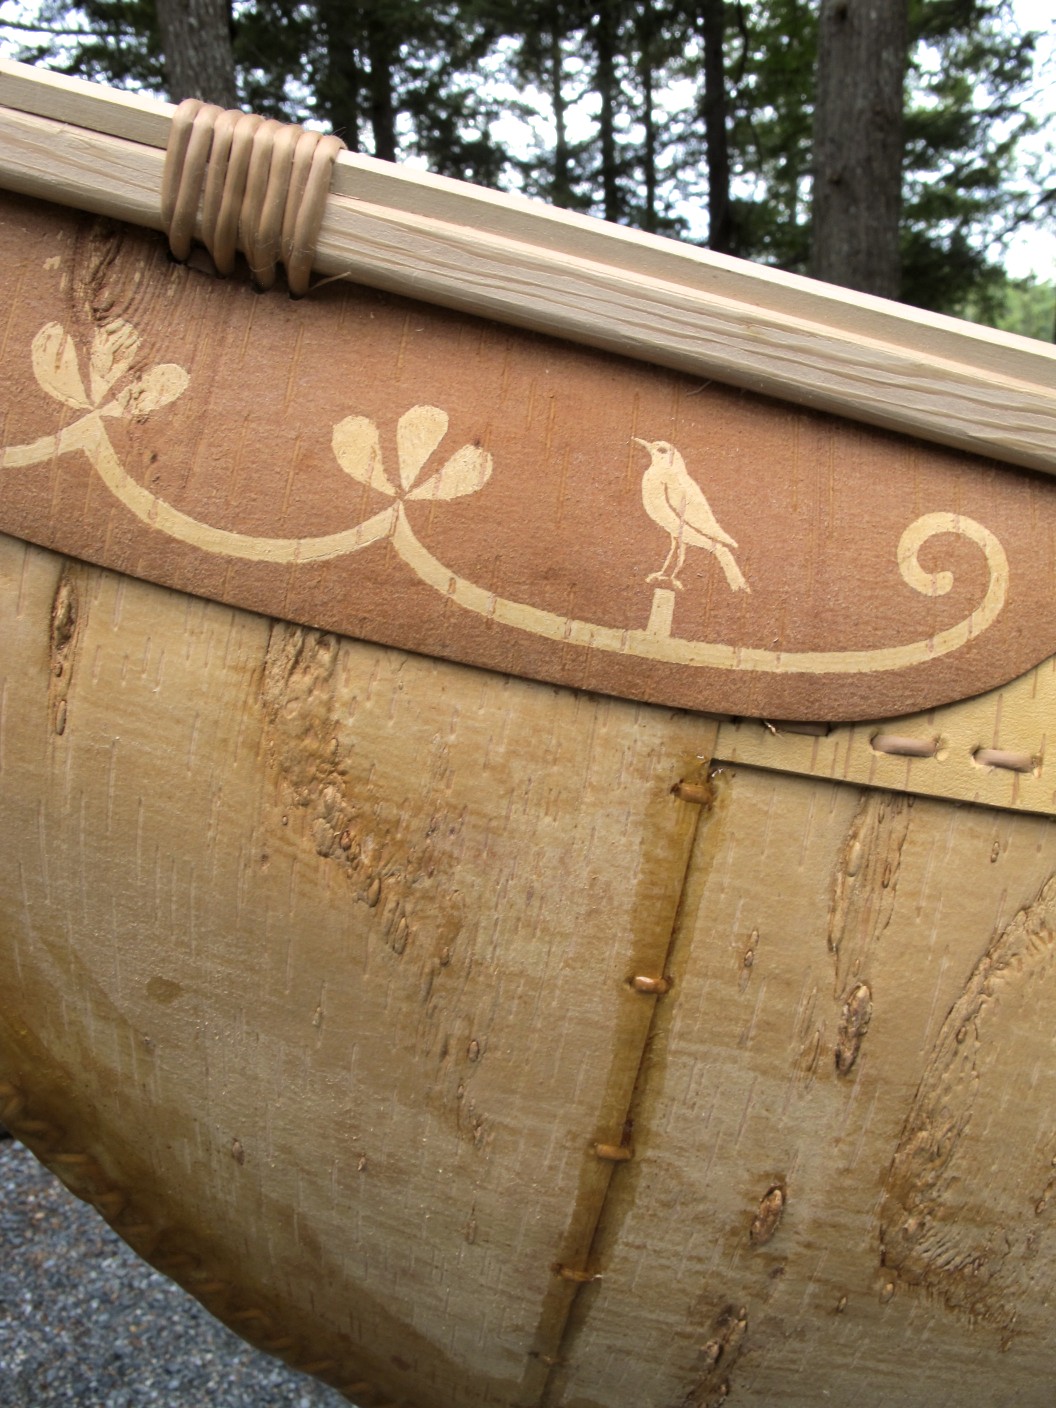 Steve's mark on canoe (edited).jpg